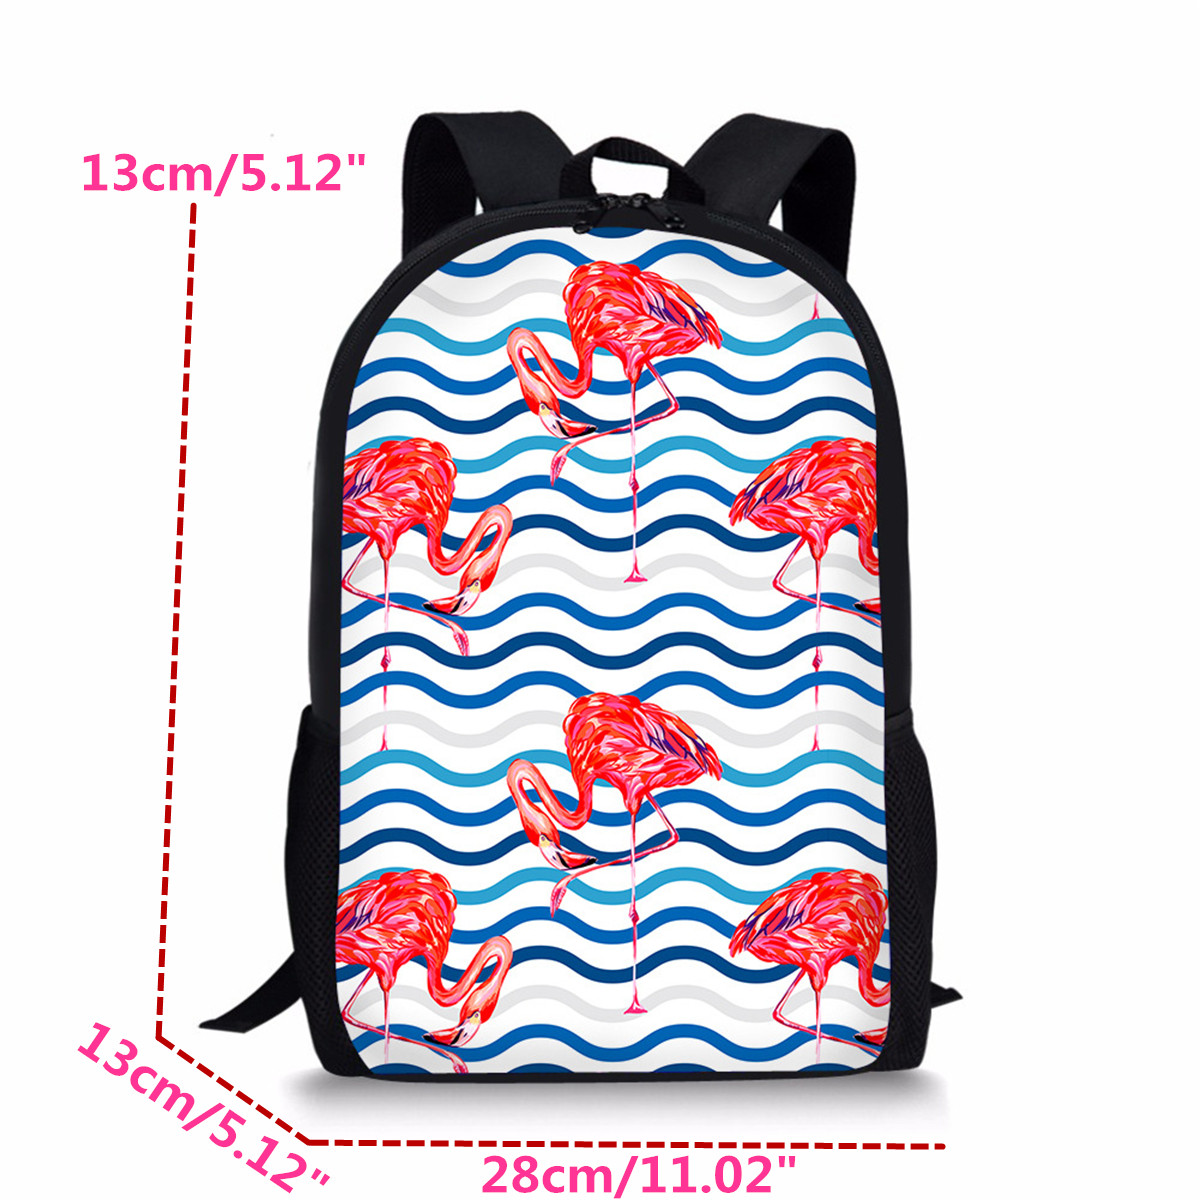 Flamingo-Backpack-Student-Travel-School-College-Shoulder-Bag-Handbag-Camping-Rucksack-1390454-2